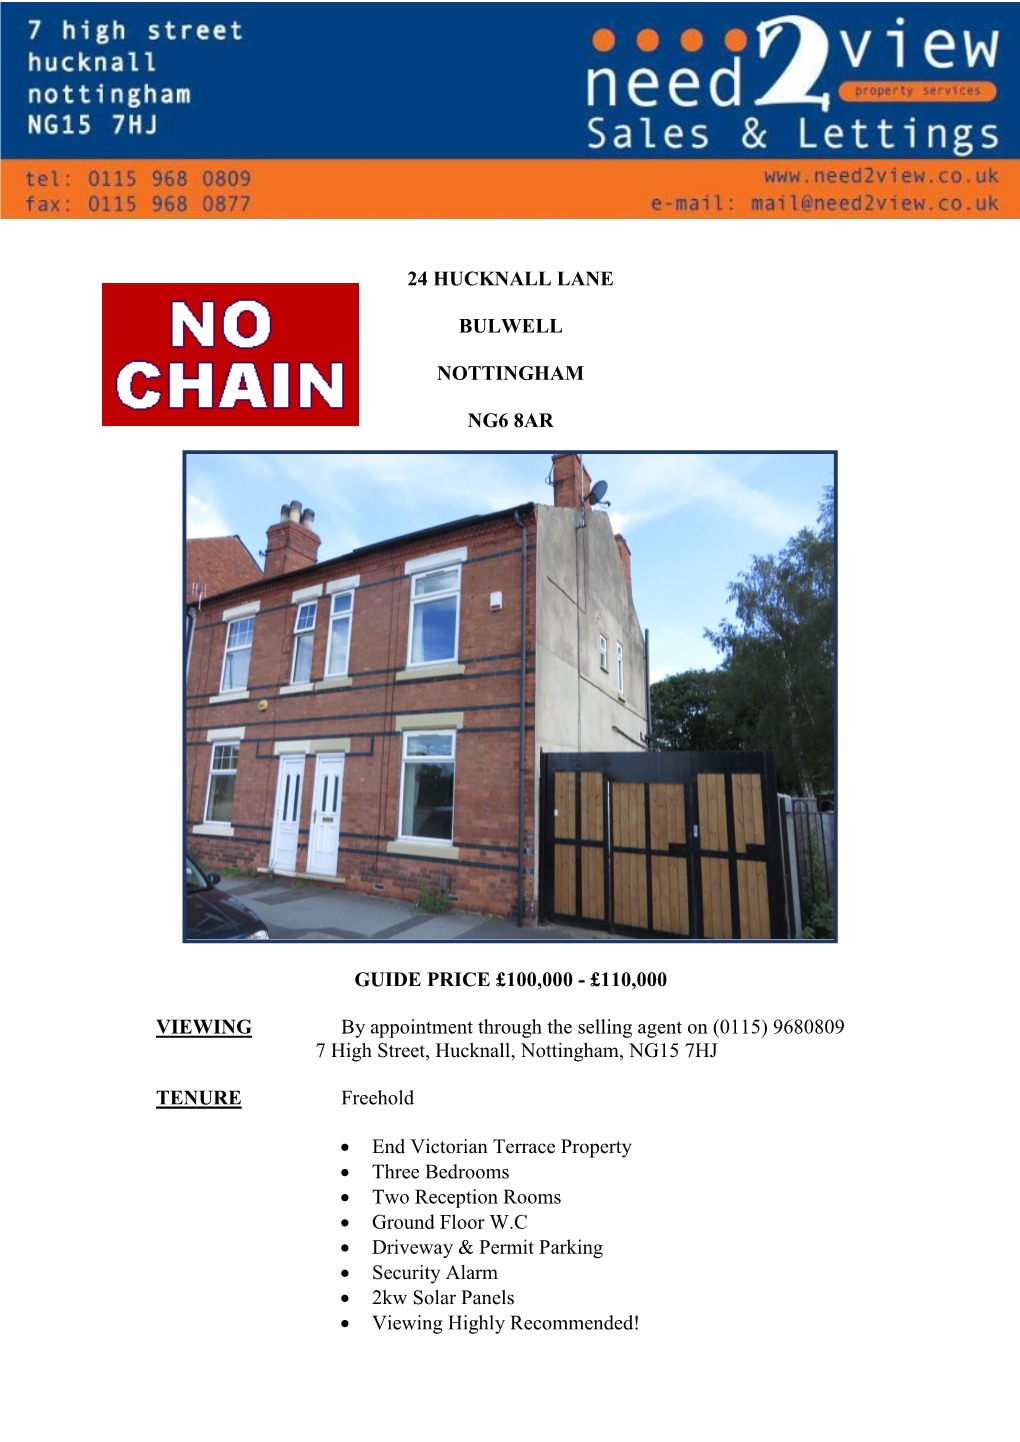 24 Hucknall Lane Bulwell Nottingham Ng6 8Ar Guide Price £100,000